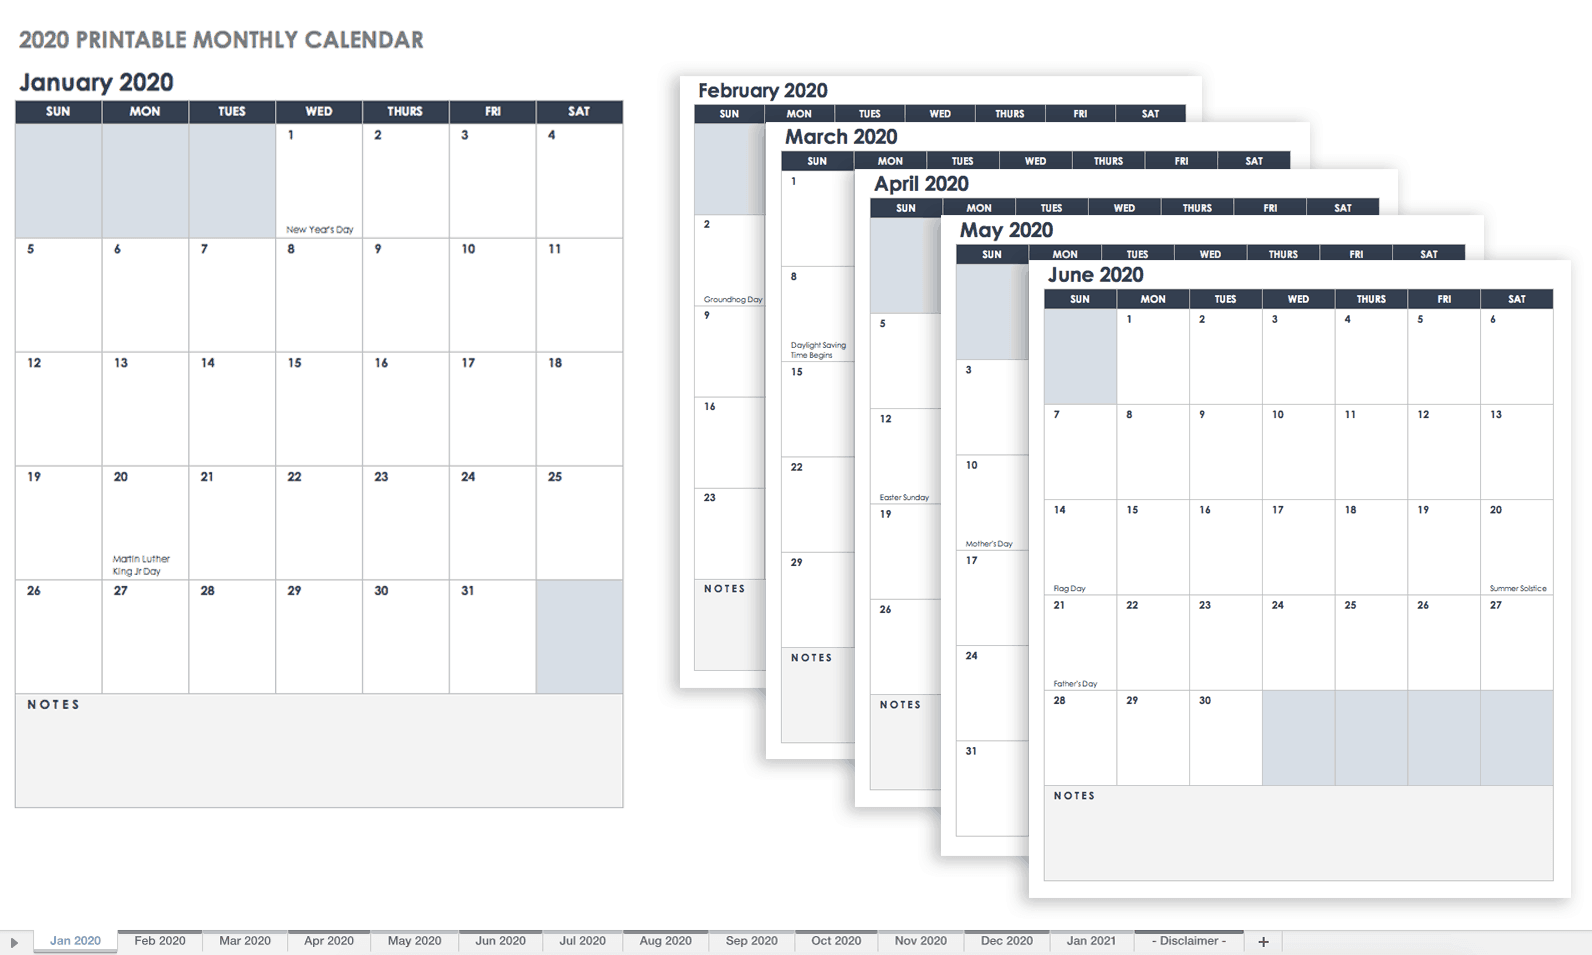 Calendario verticale mensile stampabile 2020